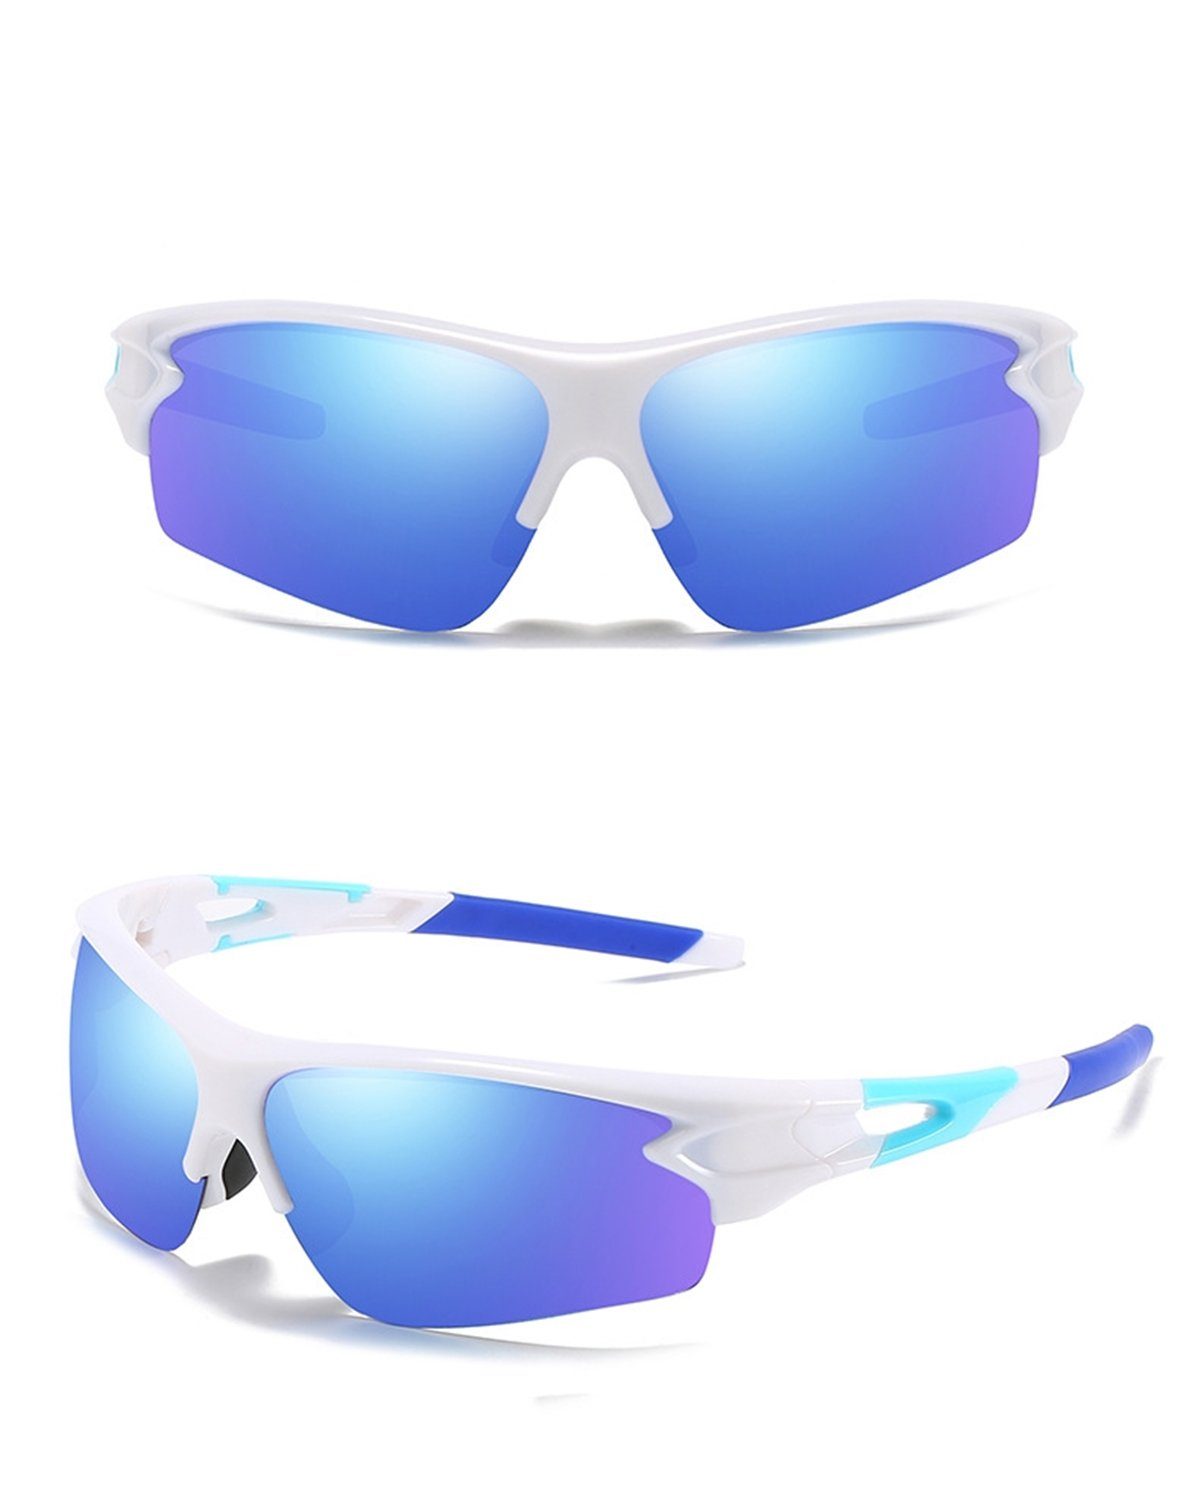 Die Sterne Motorradbrille Selbstverändernde Radsport-Sonnenbrille für Damen und Herren Bai Cai